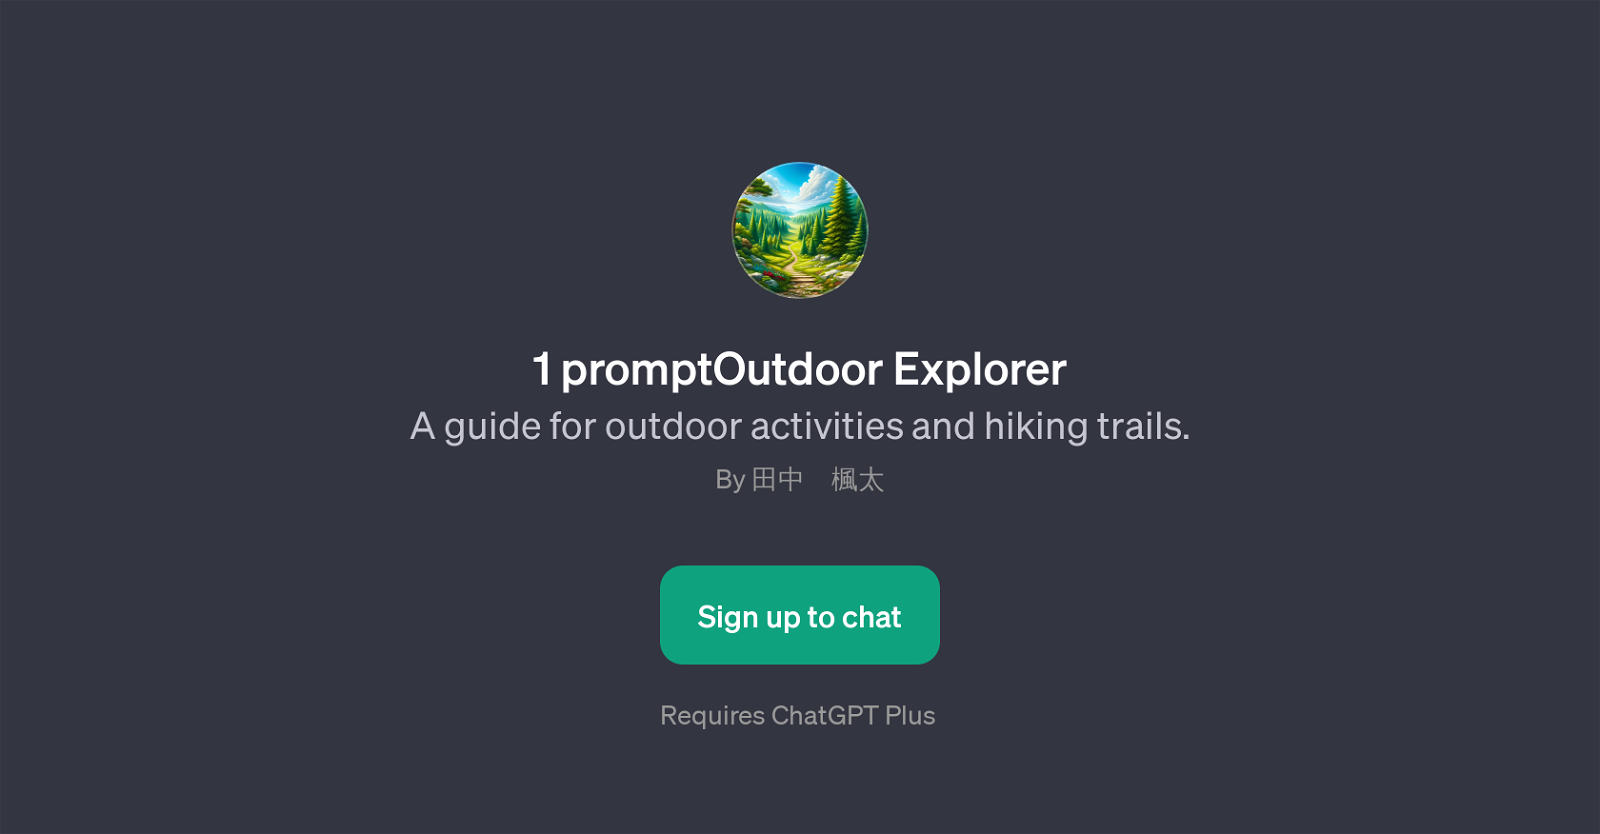 1 promptOutdoor Explorer website